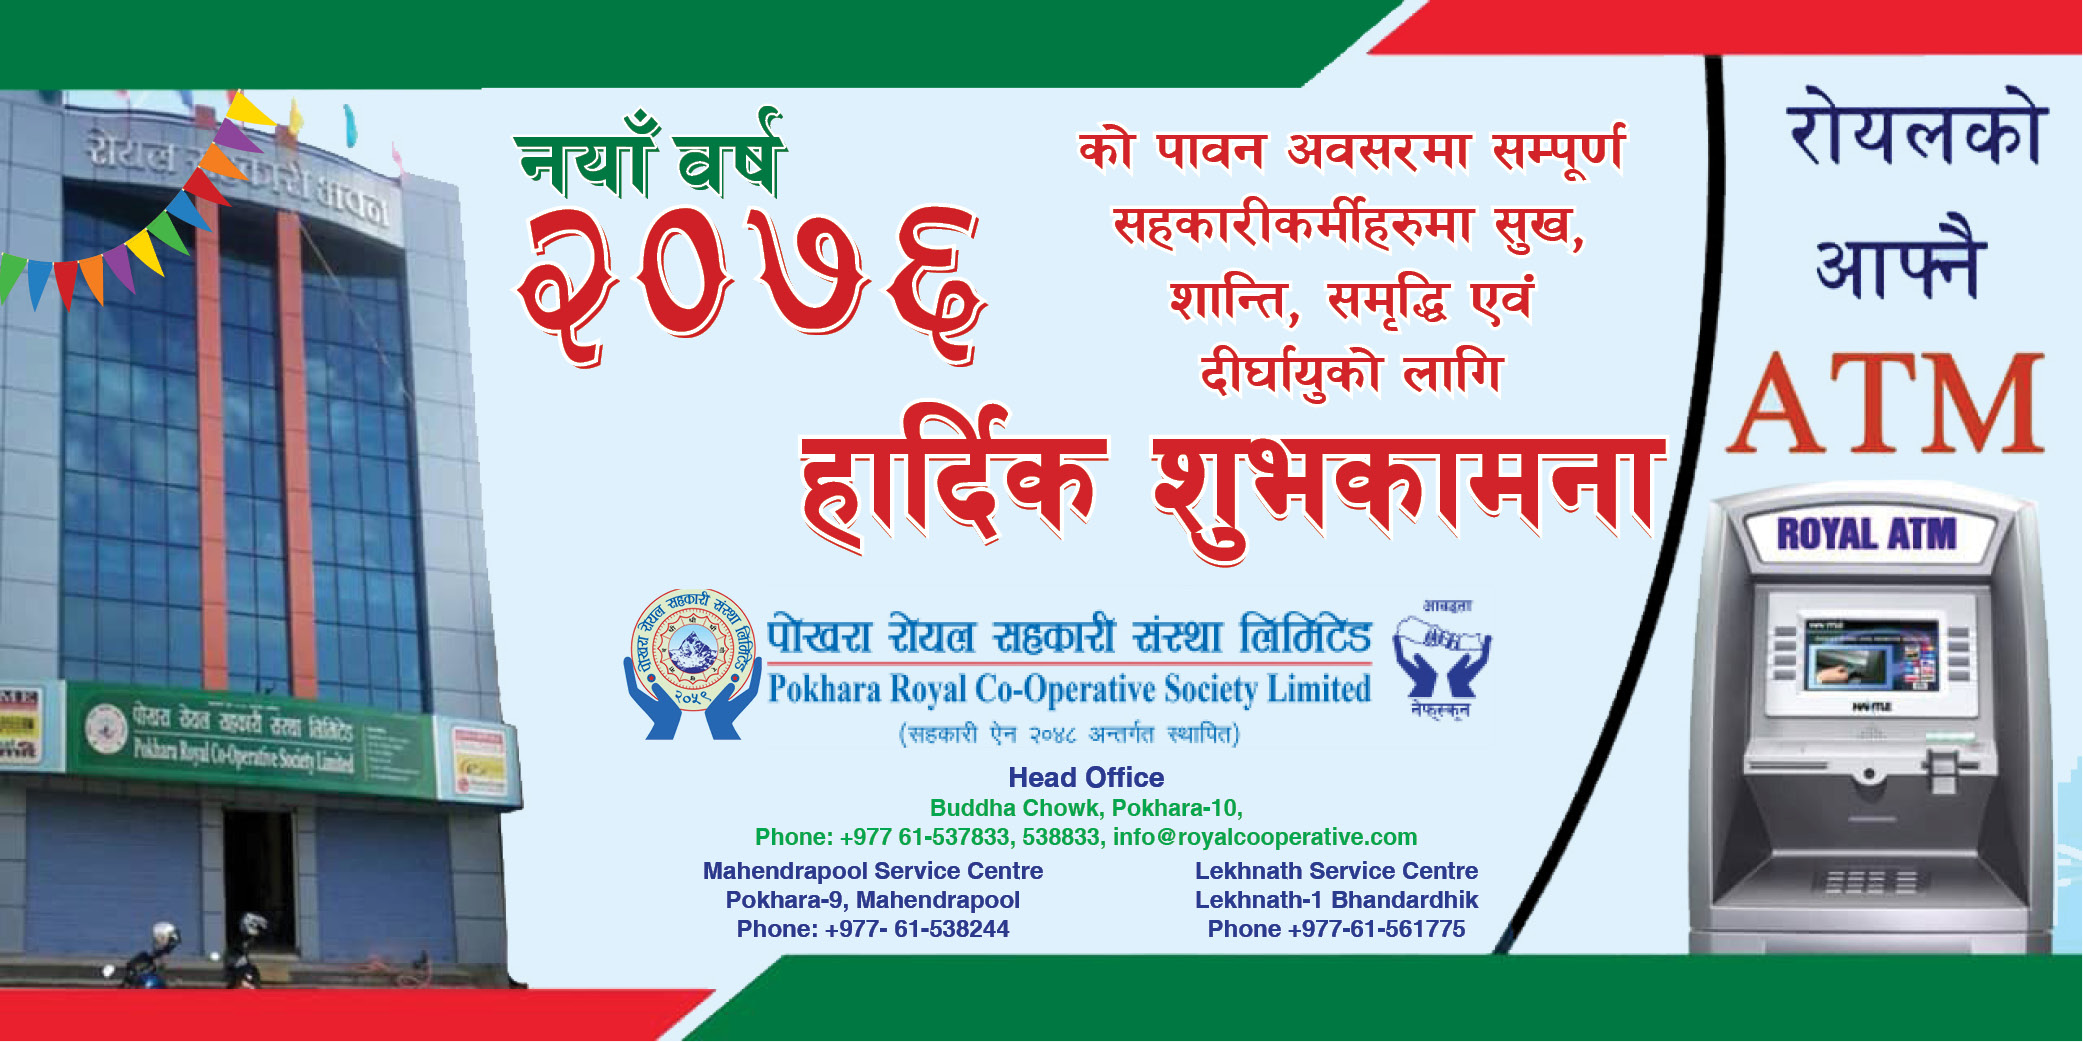 Happy new year: Pokhara Royal Co-Operative Society Limited